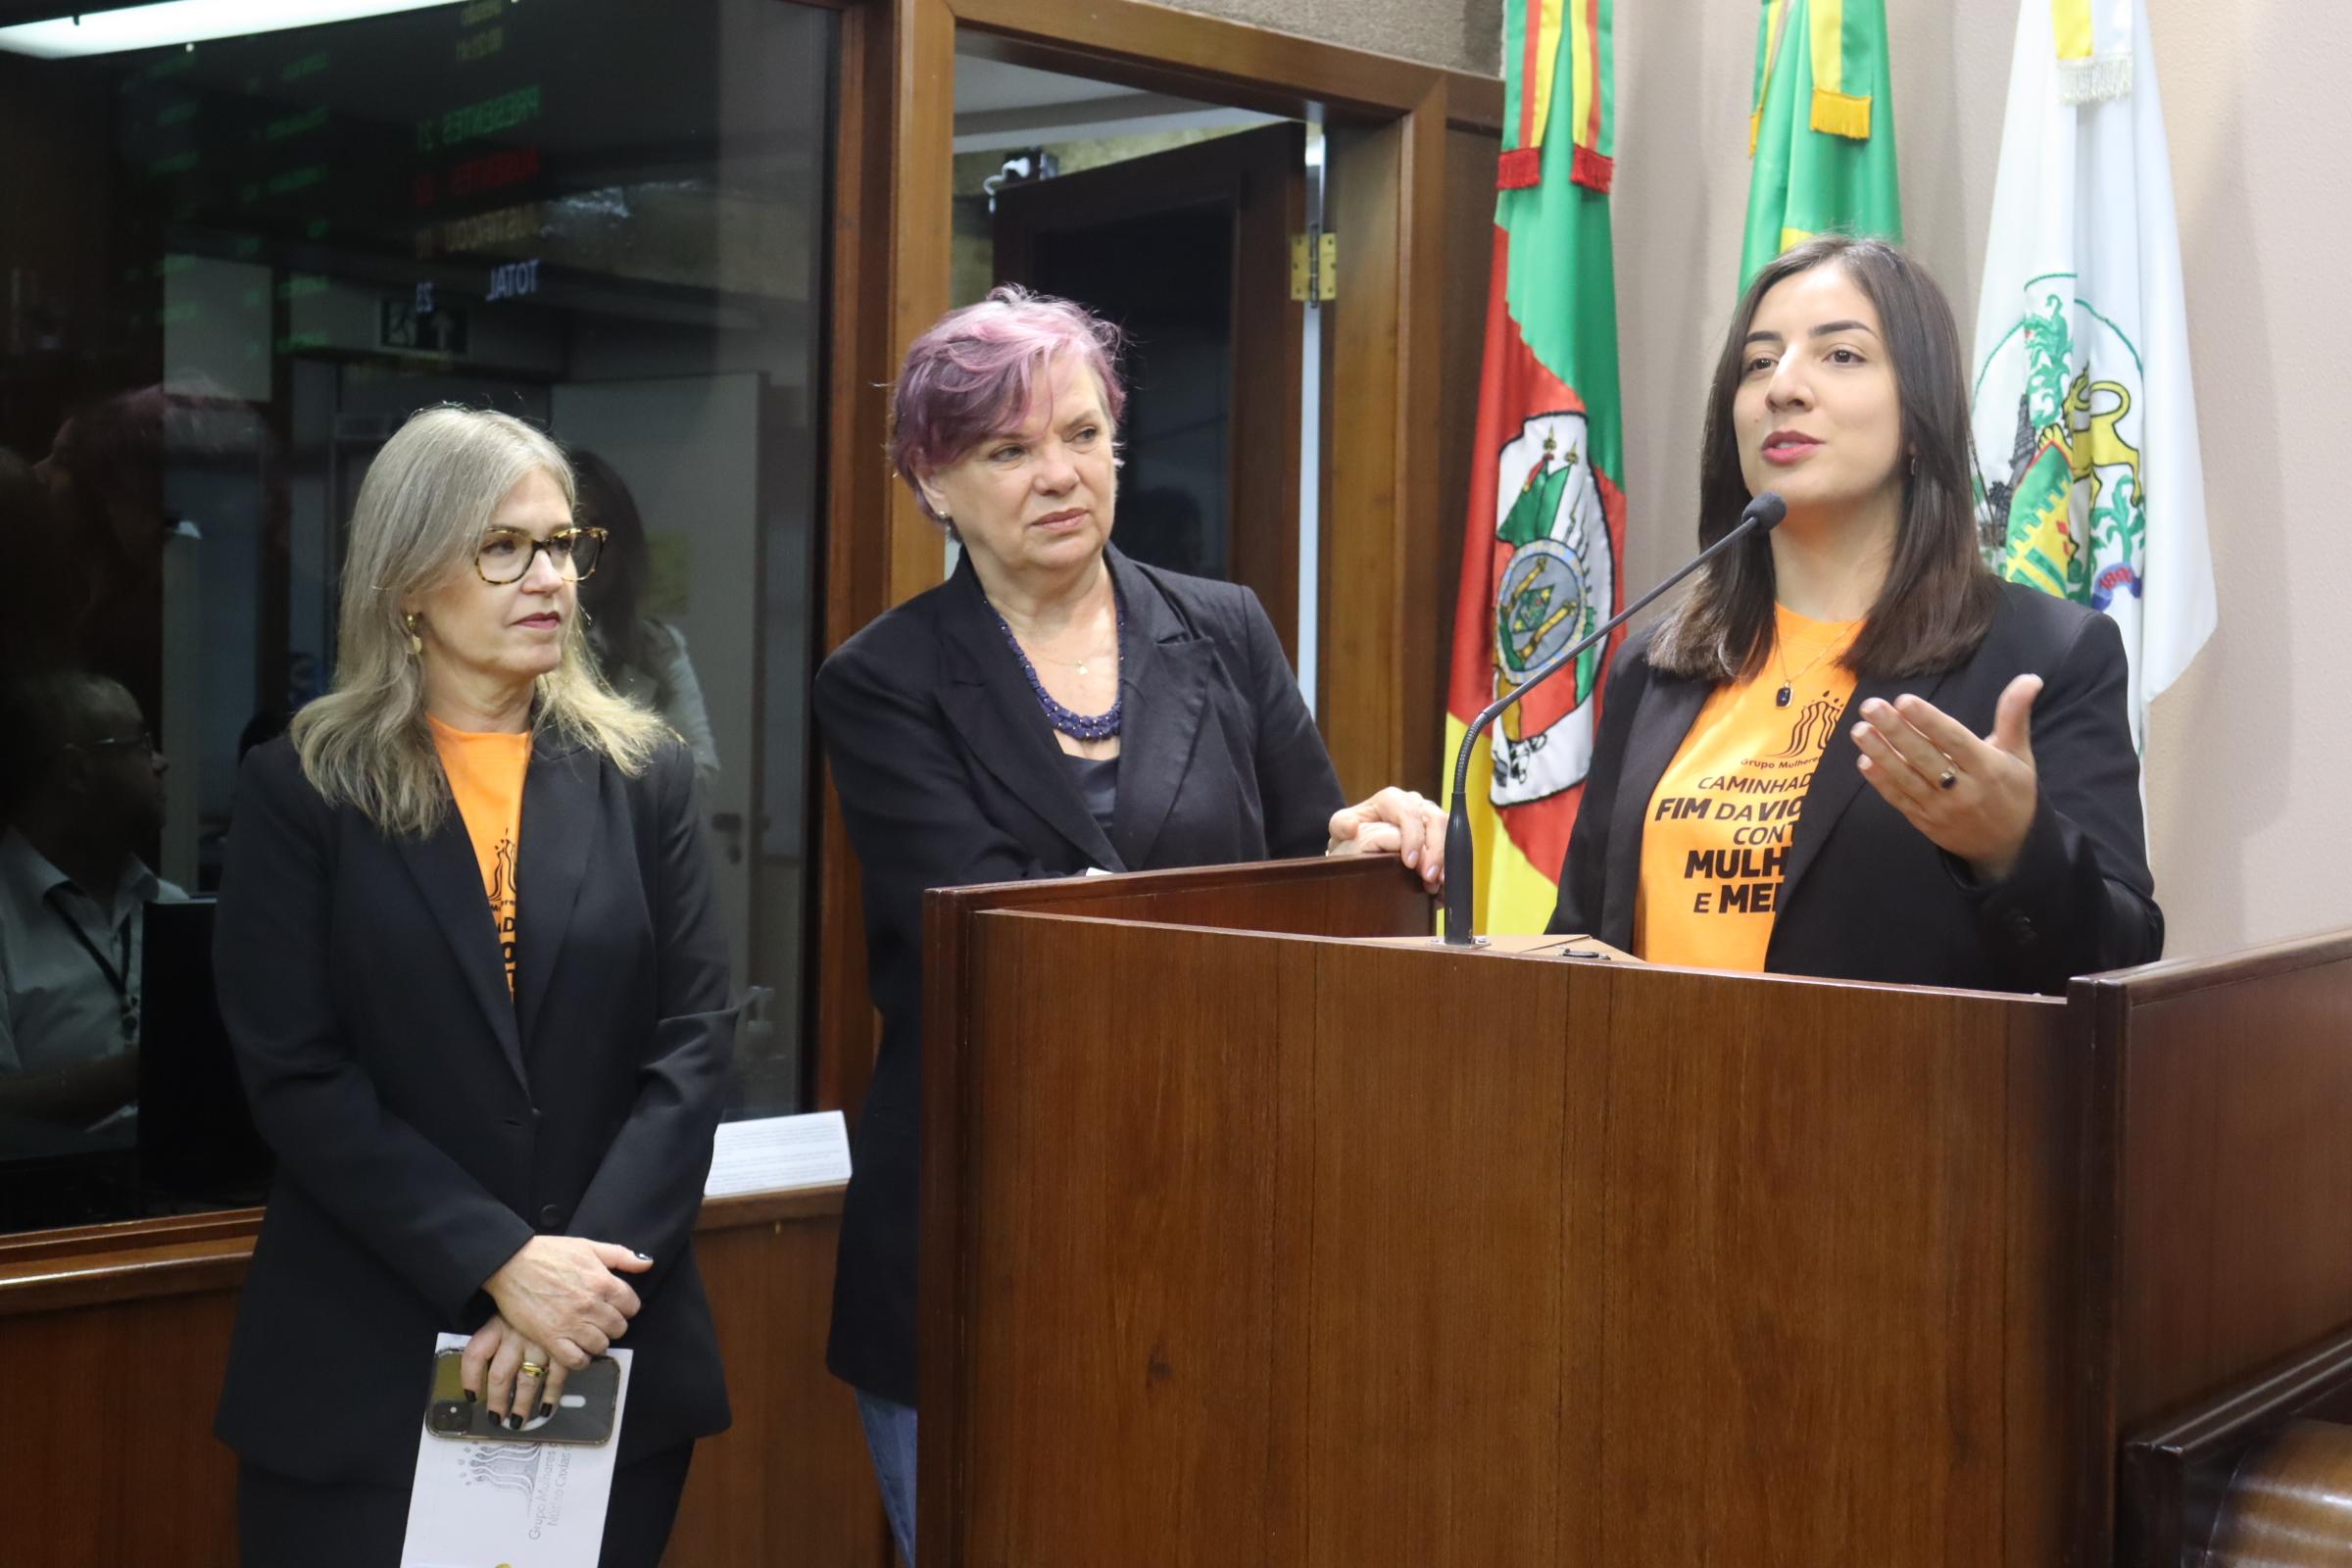 Mulheres do Brasil chamam a comunidade para caminhada contra a violência 